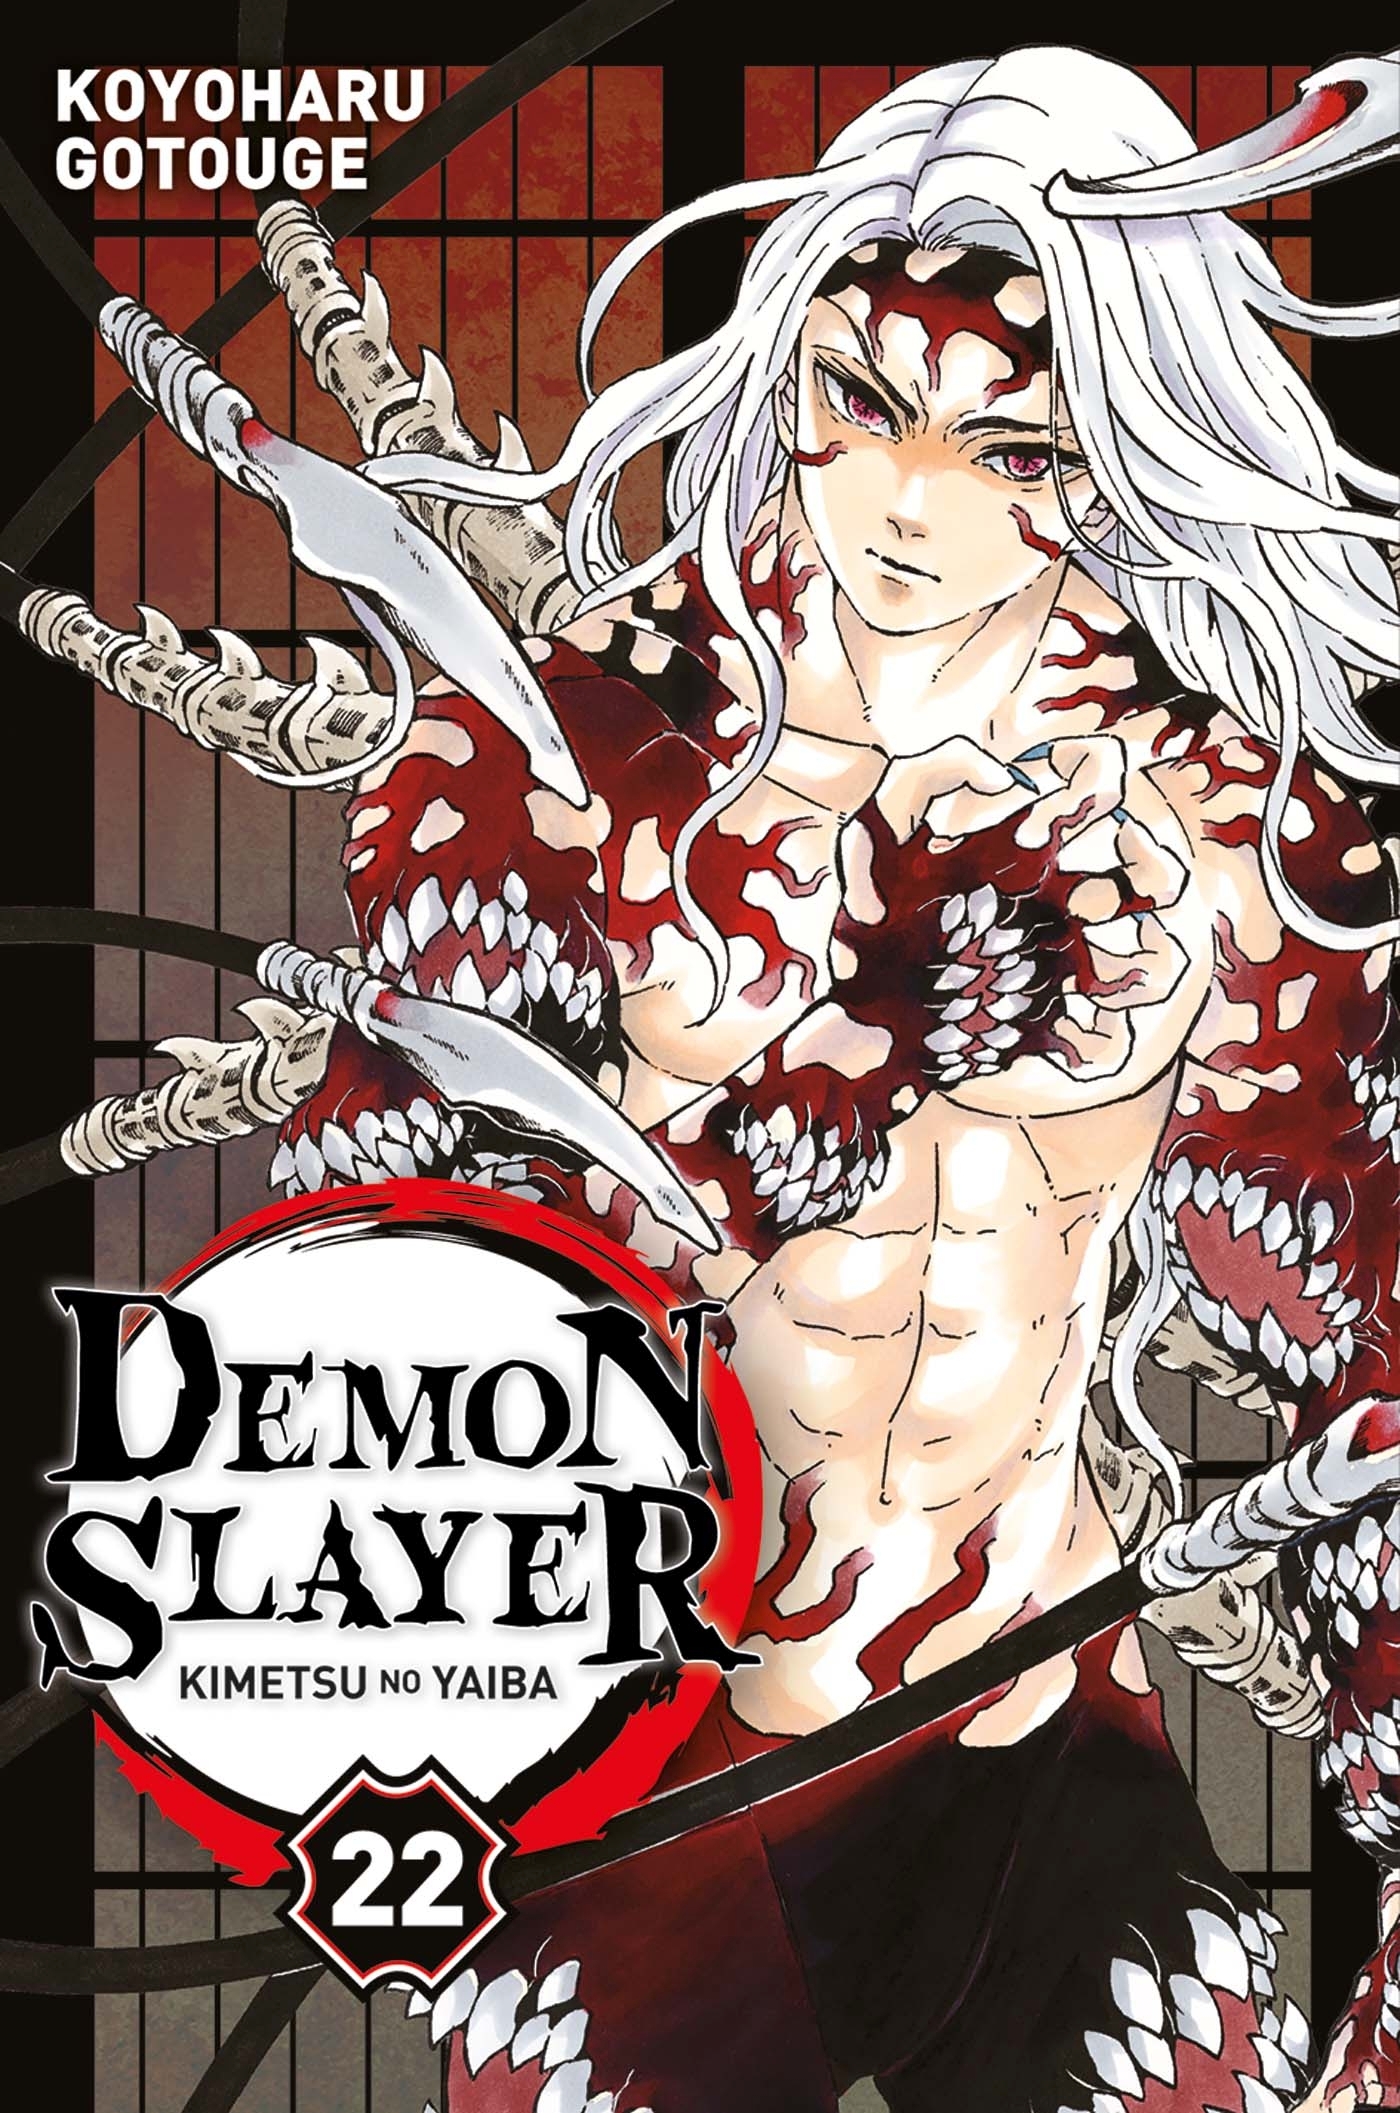 Demon slayer v.22 : Kimetsu No Yaiba